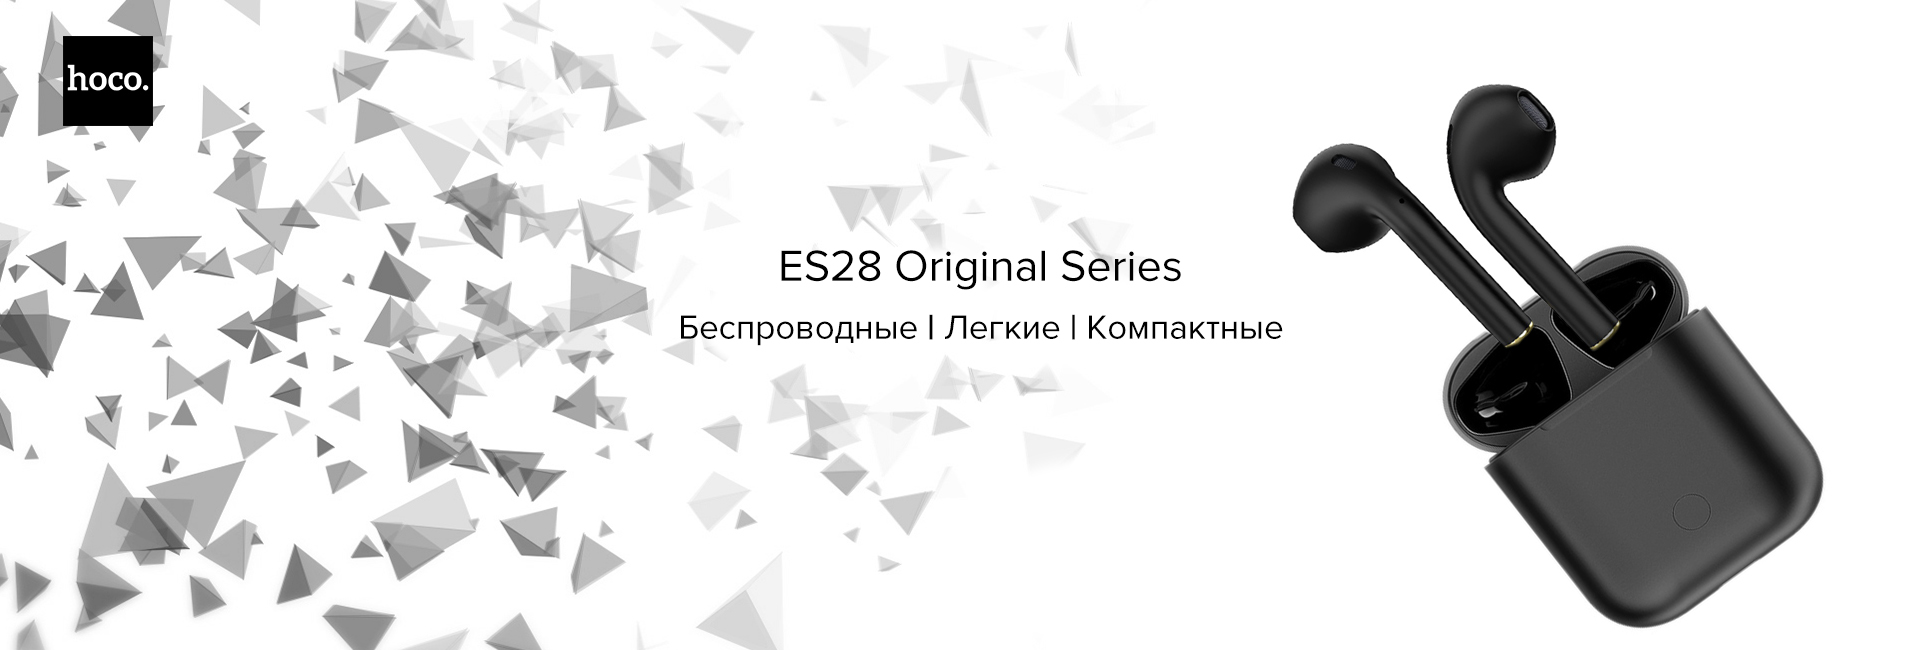 Наушники ES28 Original Series